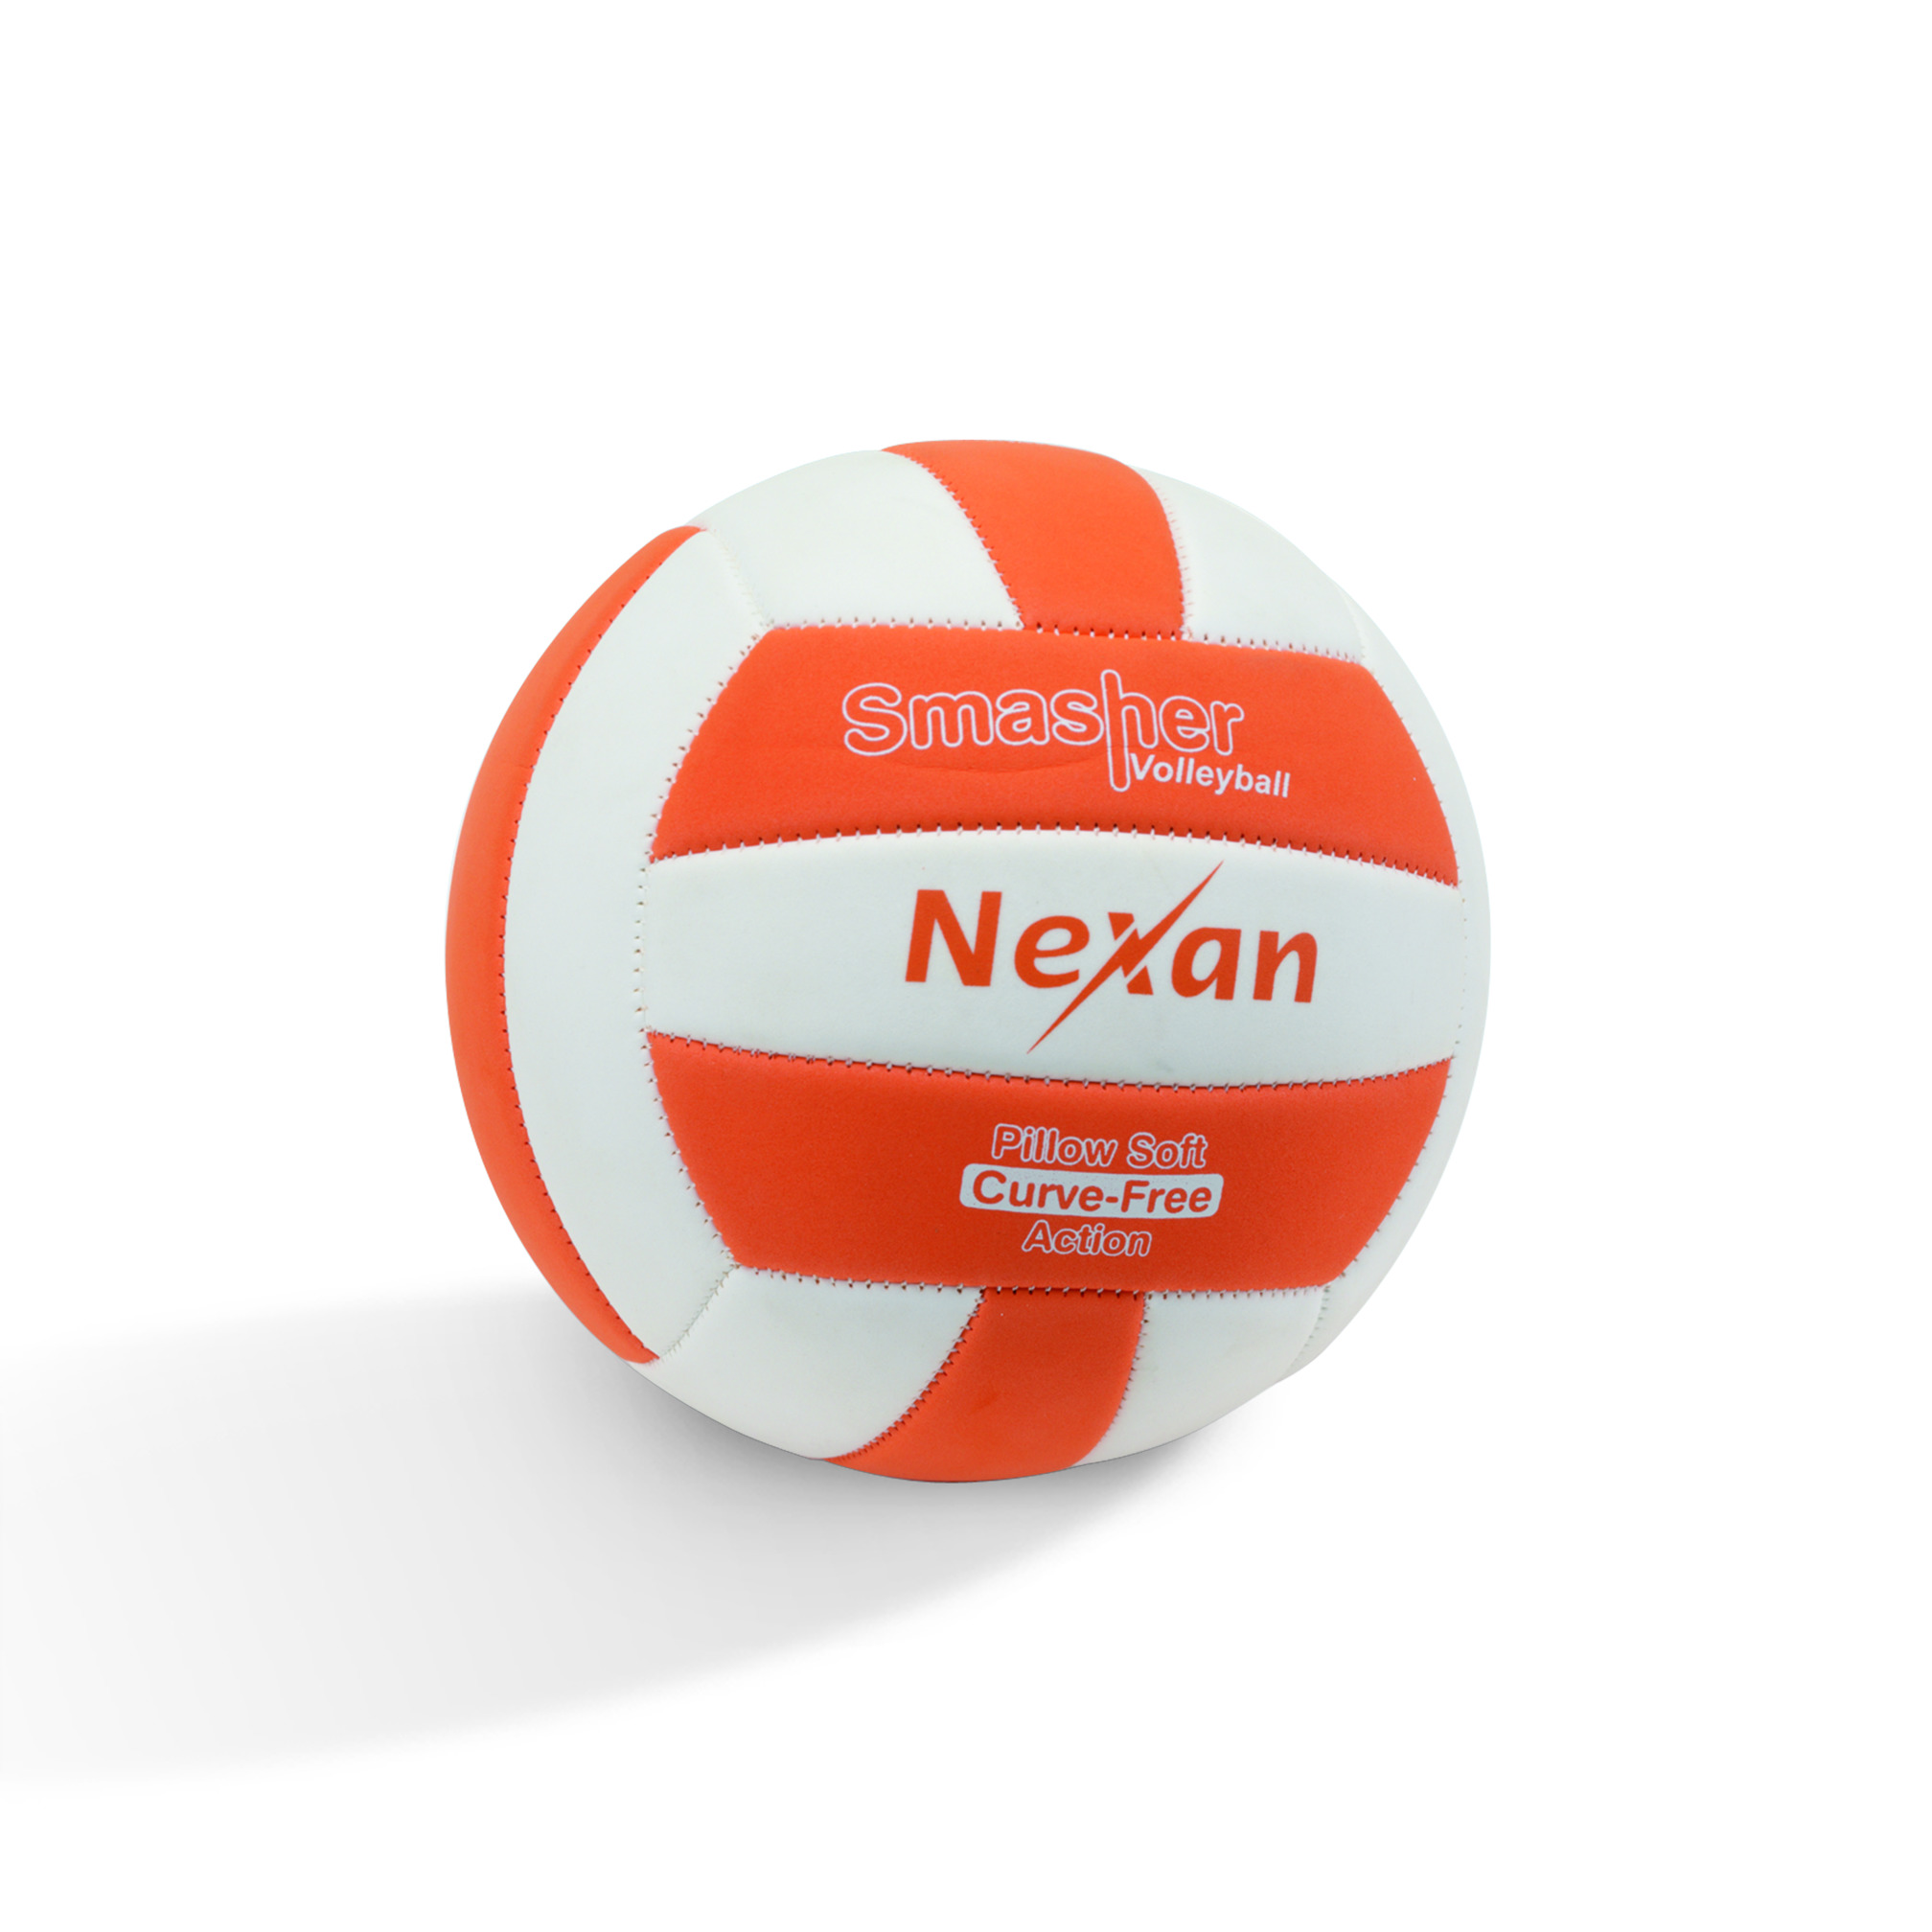 Nexan Volleyball Smasher Pillow Soft, Größe 5